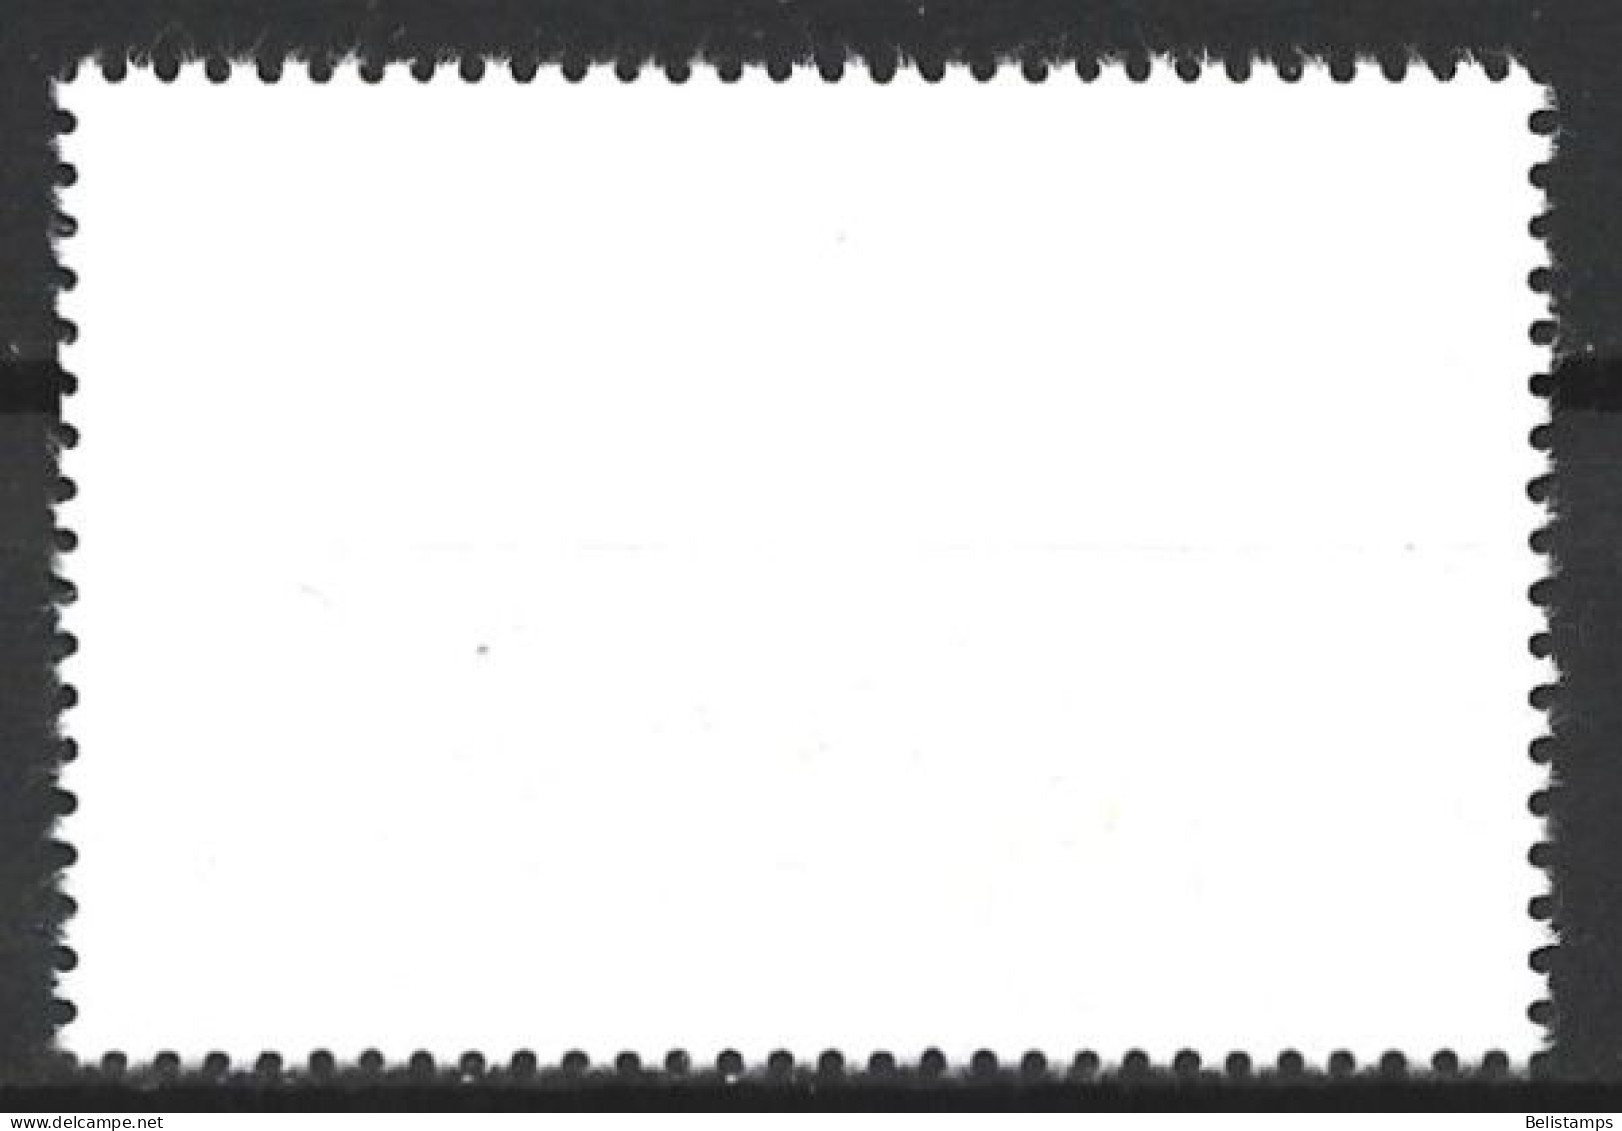 Cuba 1977. Scott #2163 (U) Intl. Airmail Service, 50th Anniv. - Gebruikt